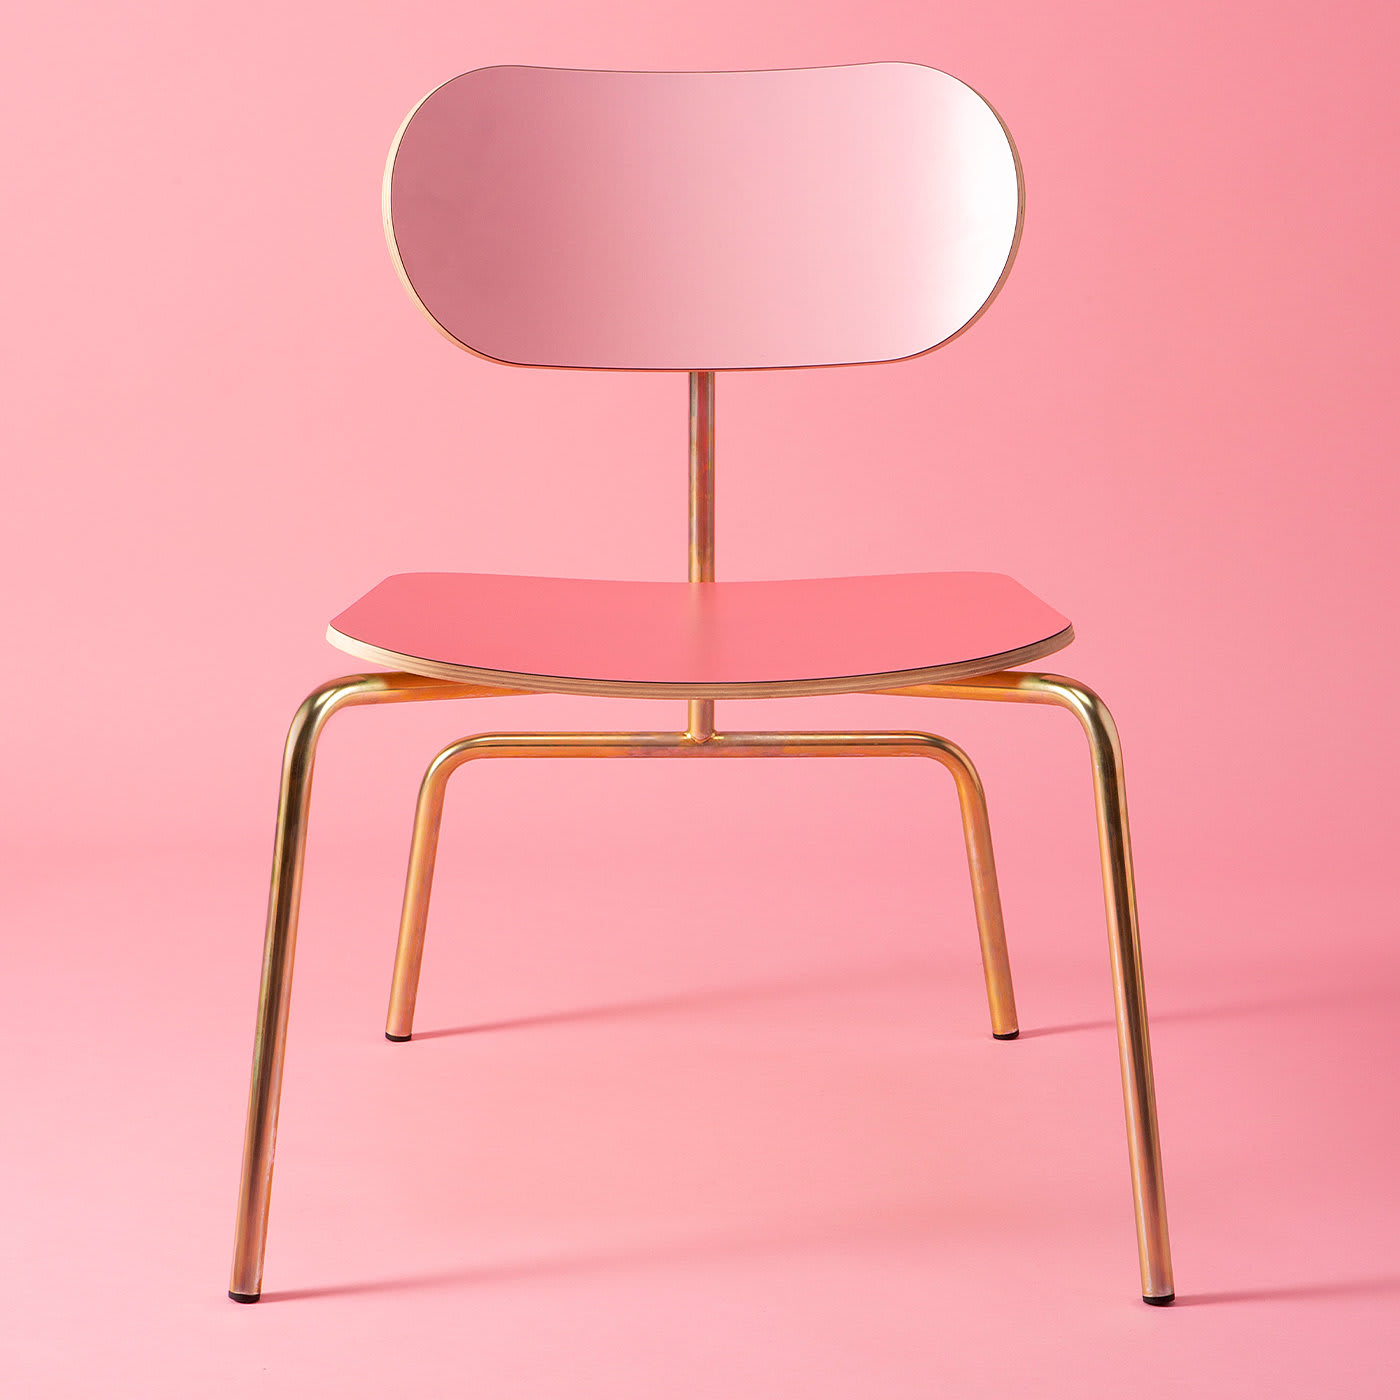 Lombrello Pink Lounge Chair by Andrea Forapani - Lombrello